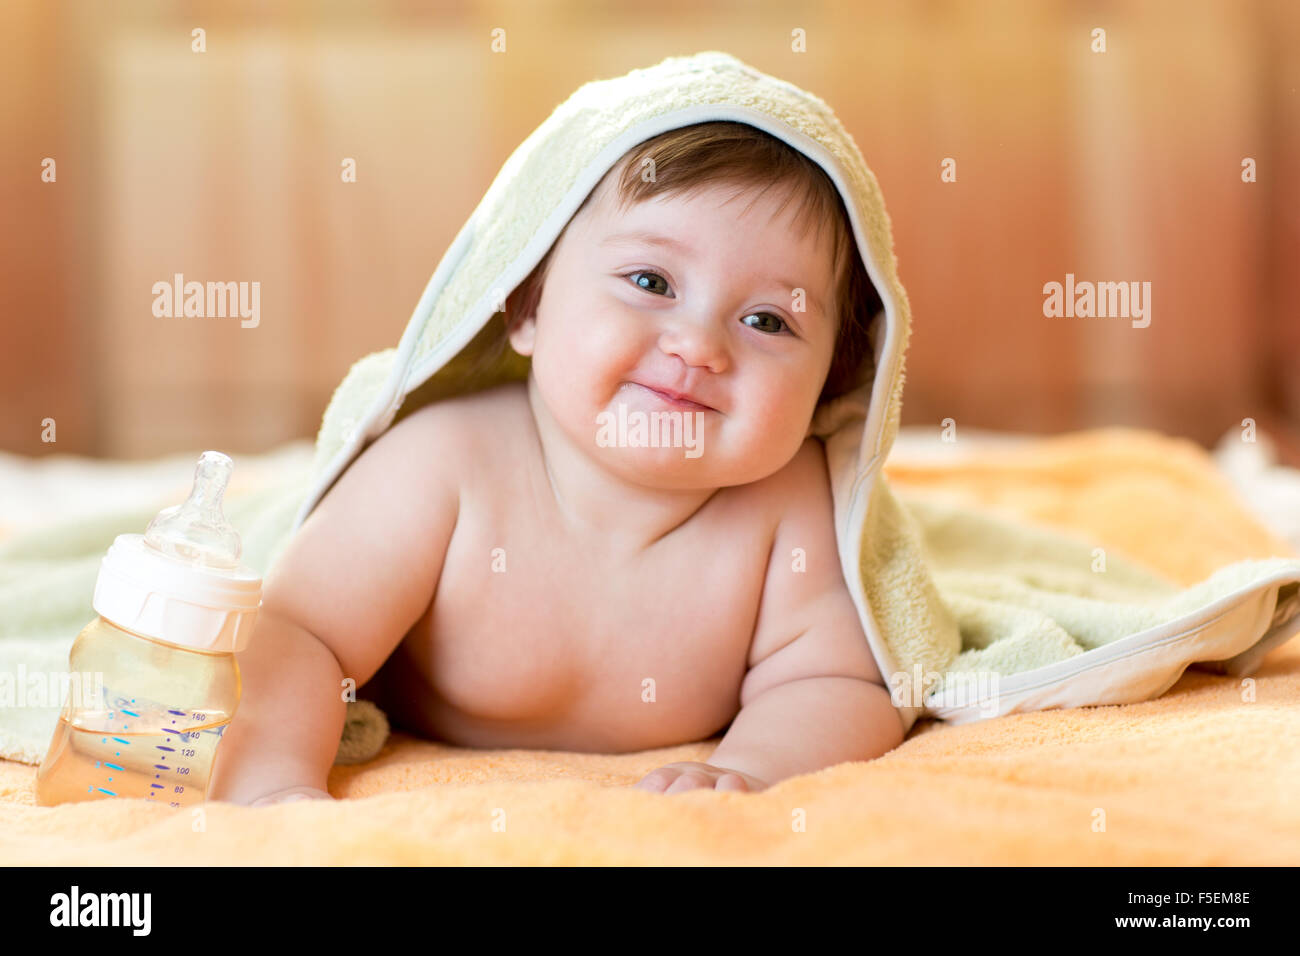 Adorable baby bambino sotto un asciugamano con cappuccio dopo il bagno Foto Stock